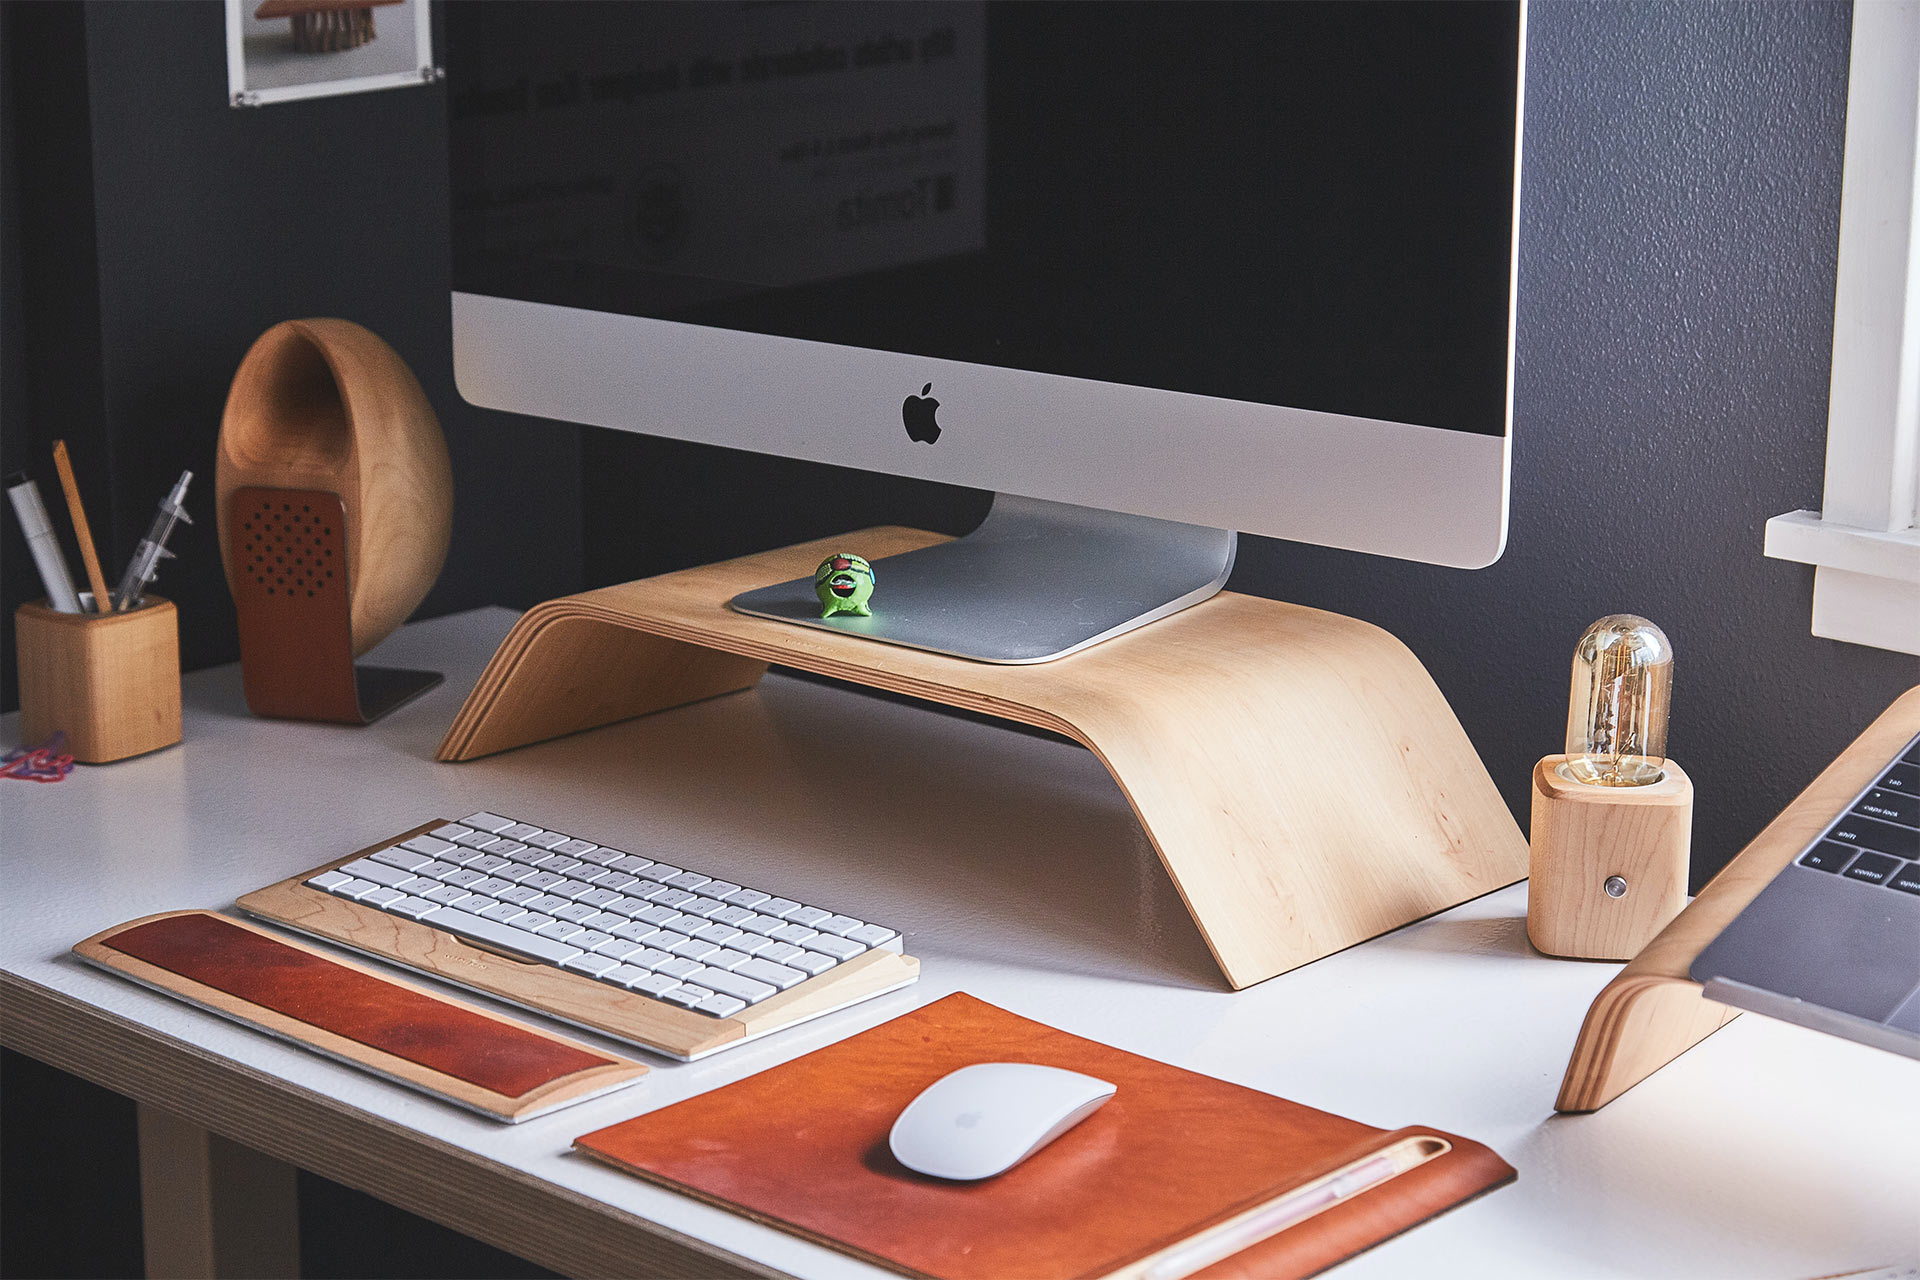 Un iMac su un supporto di legno posizionato su una scrivania, con tastiera e mouse wireless.